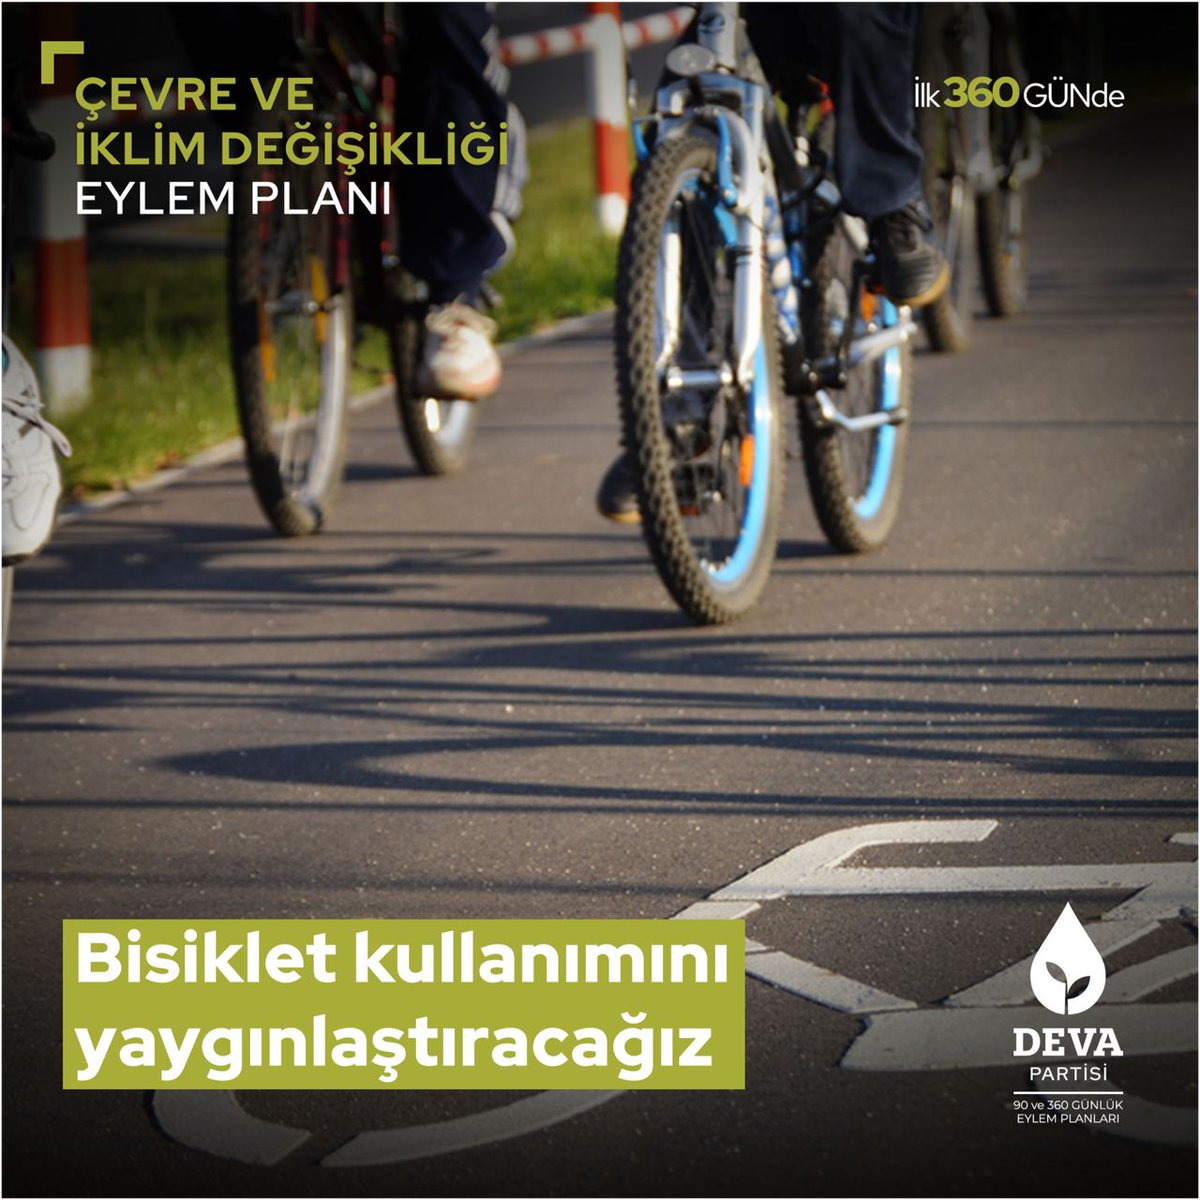 İlk 360 Günde Bisiklet Kullanımını Yaygınlaştıracağız.

#DevaDoğada
#DoğayaDevaOl
#YaşanabilirBirTürkiye